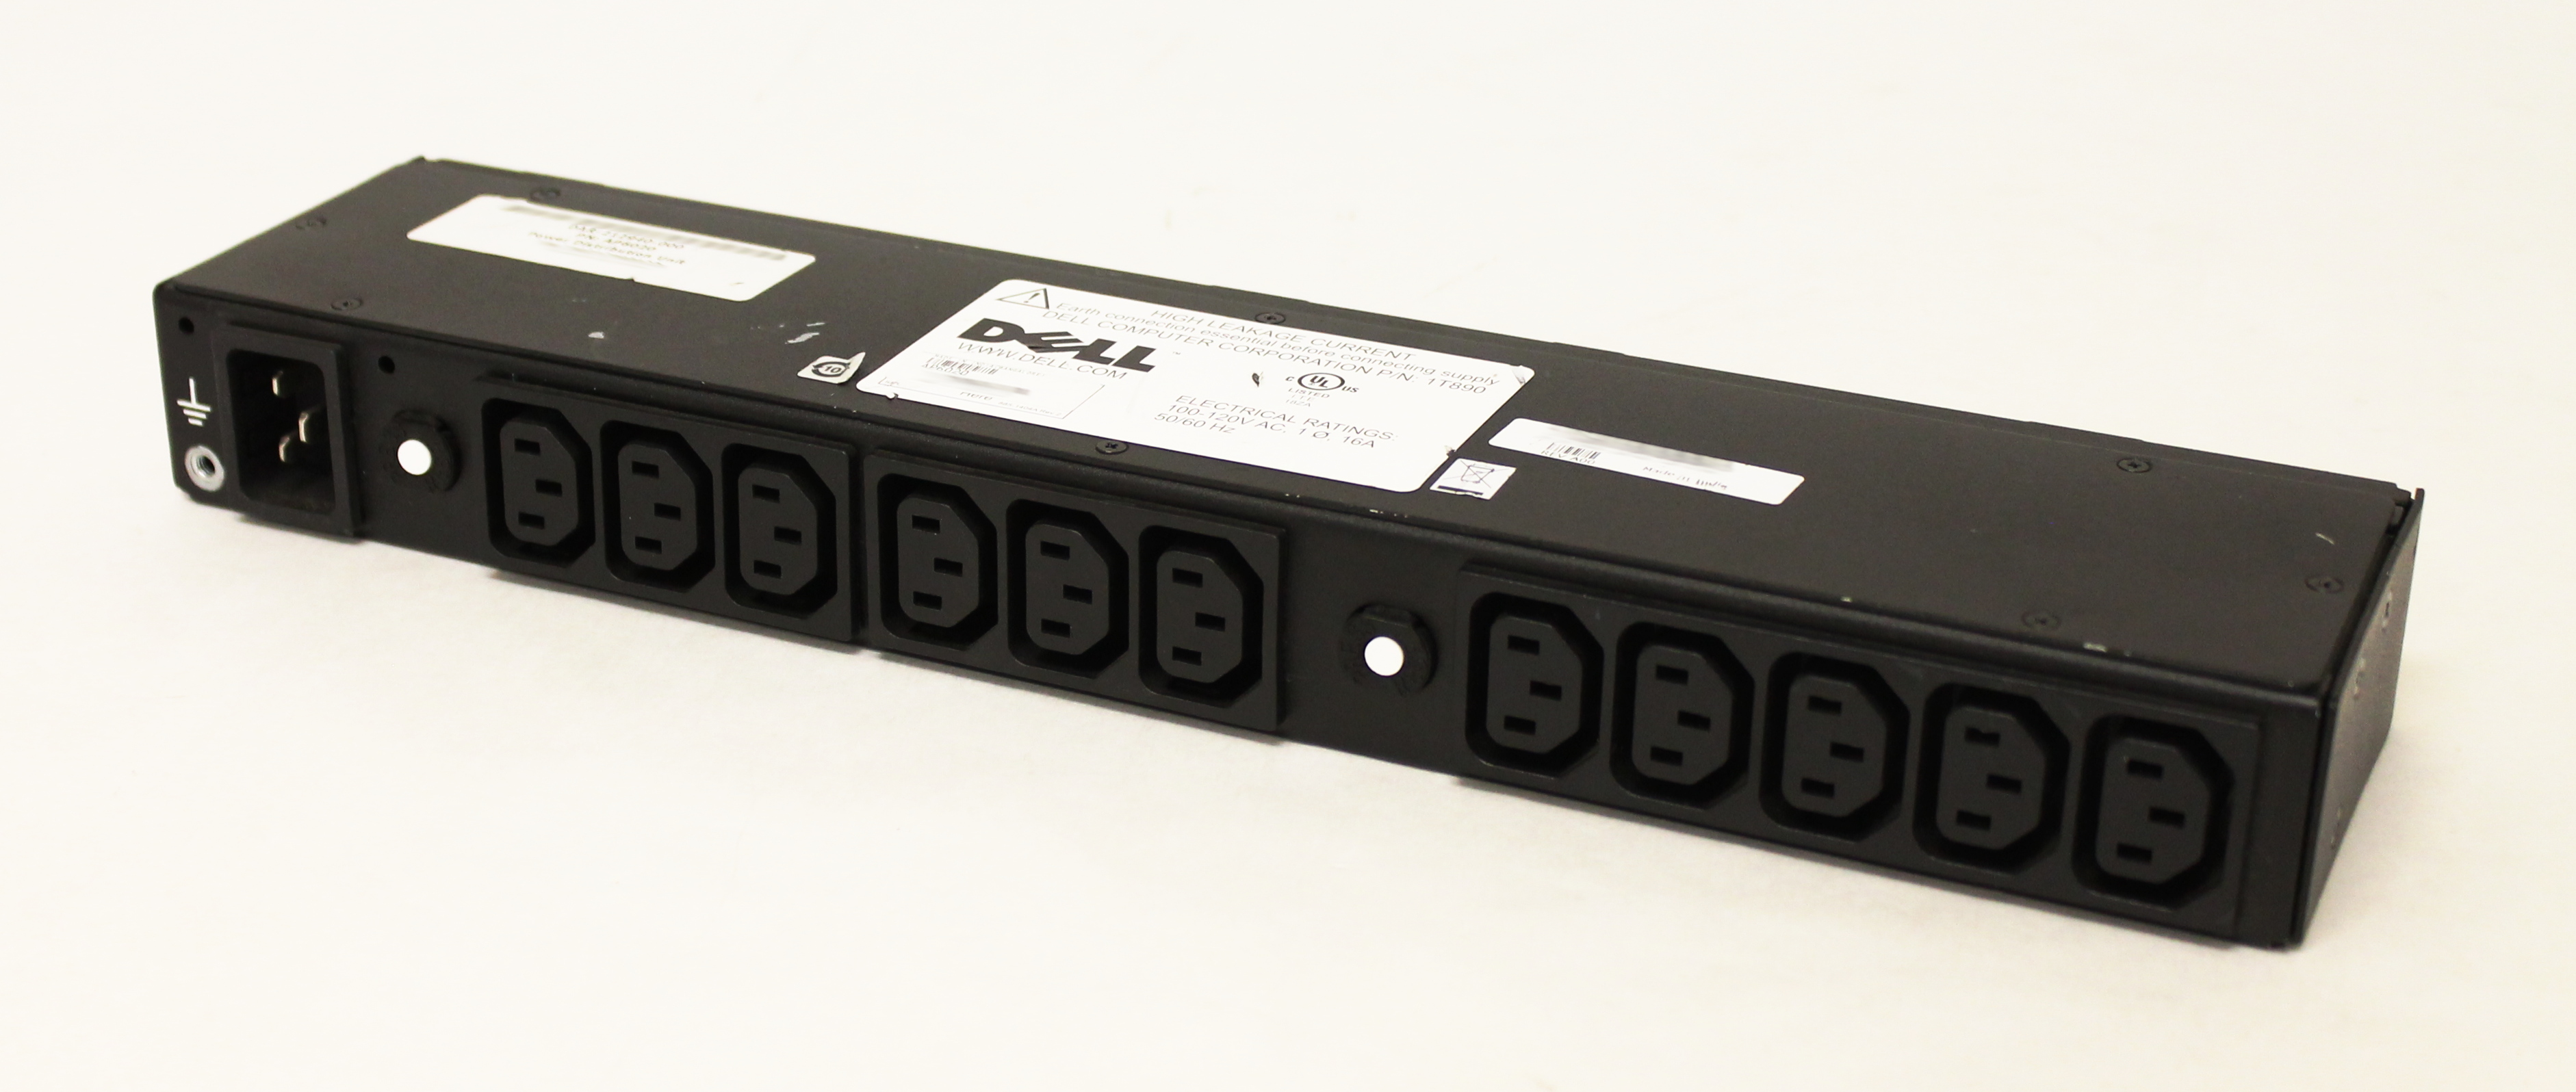 Dell AP6020 PDU Rapid Power Distribution Unit 11-Port 100-120V 16A 50/60Hz 1T890 - Click Image to Close